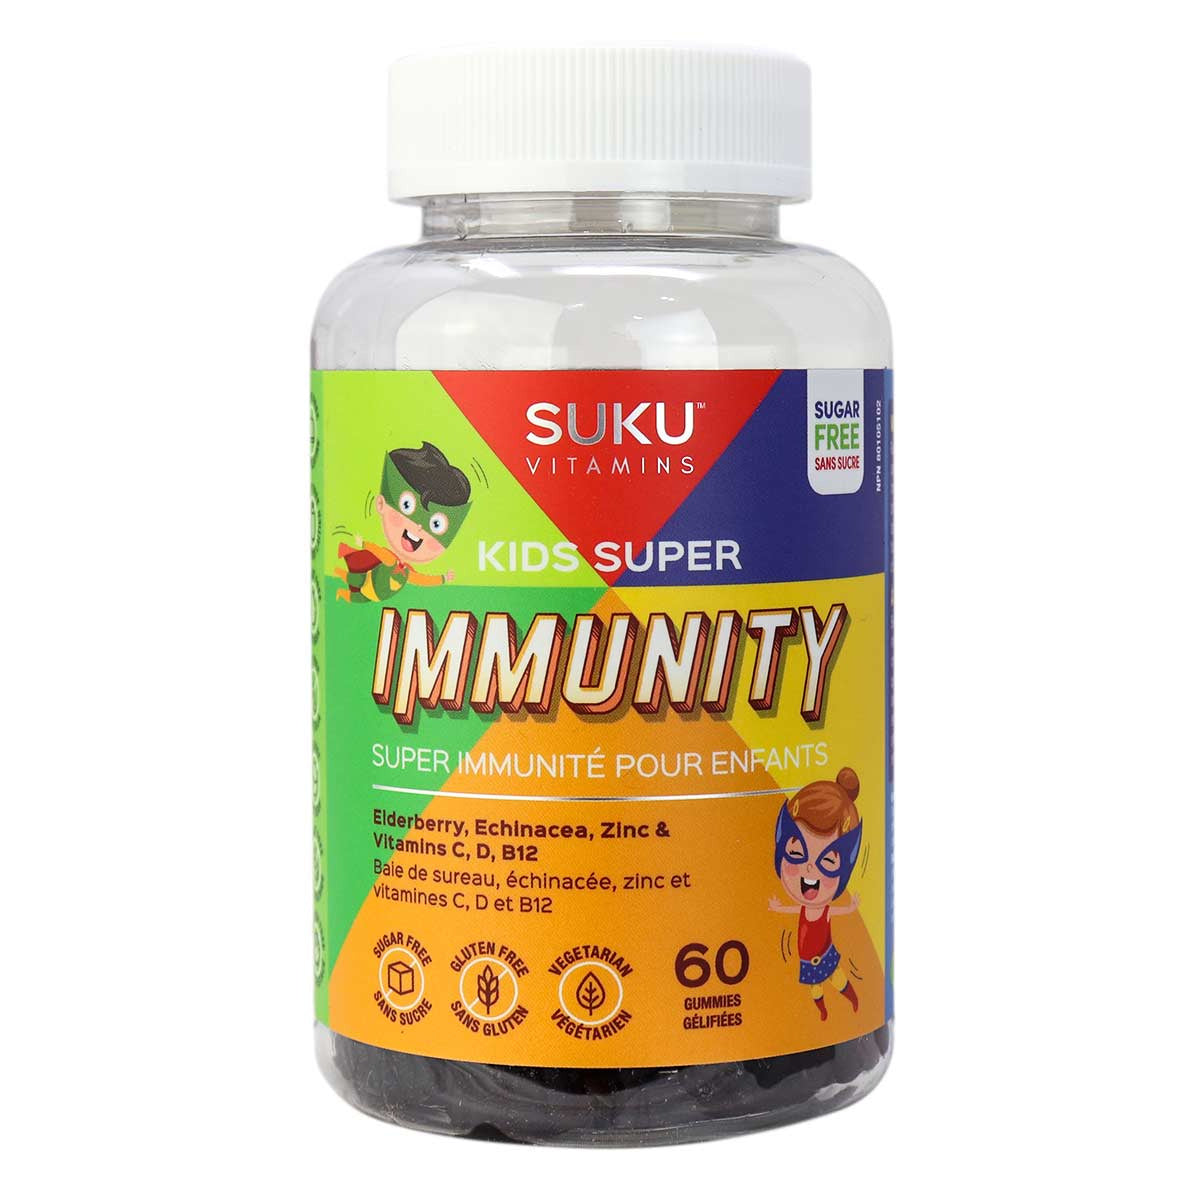 Super immunité pour enfants